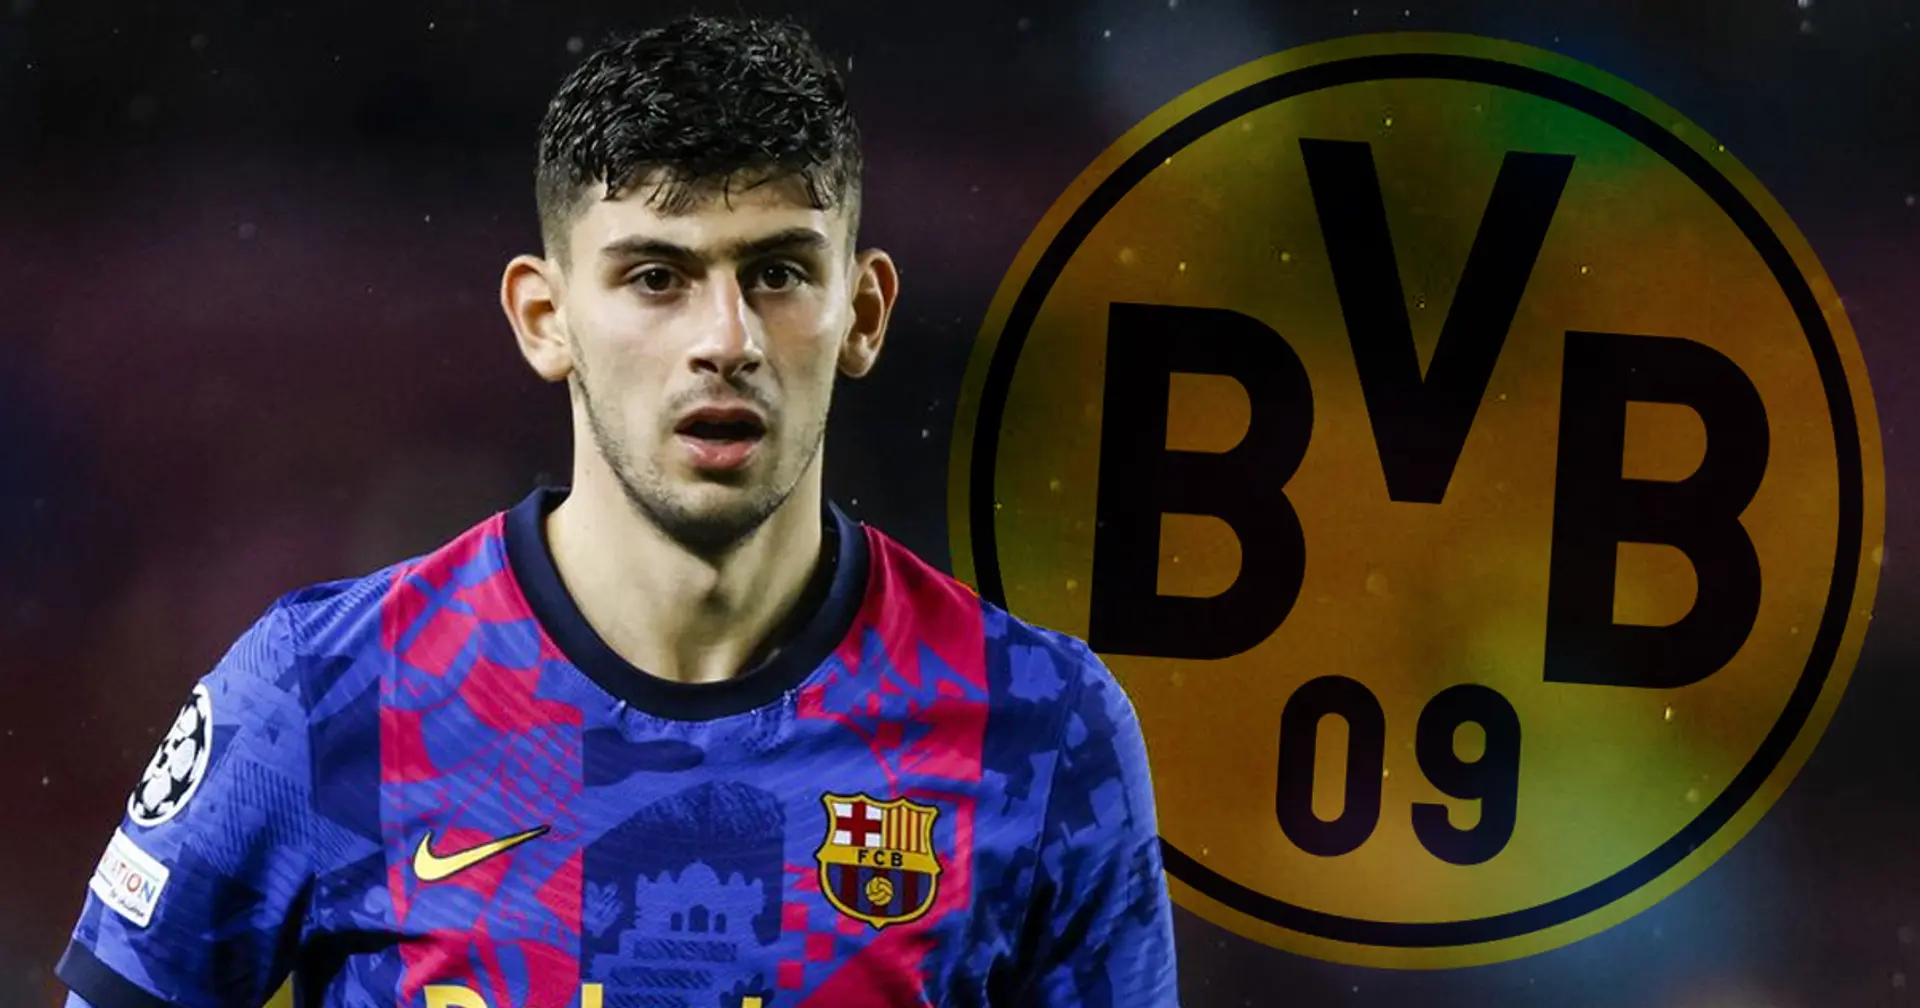 Österreich-Juwel und Ex-Barca-Flop Yusuf Demir ist wieder ein Transferziel für Dortmund - Medien